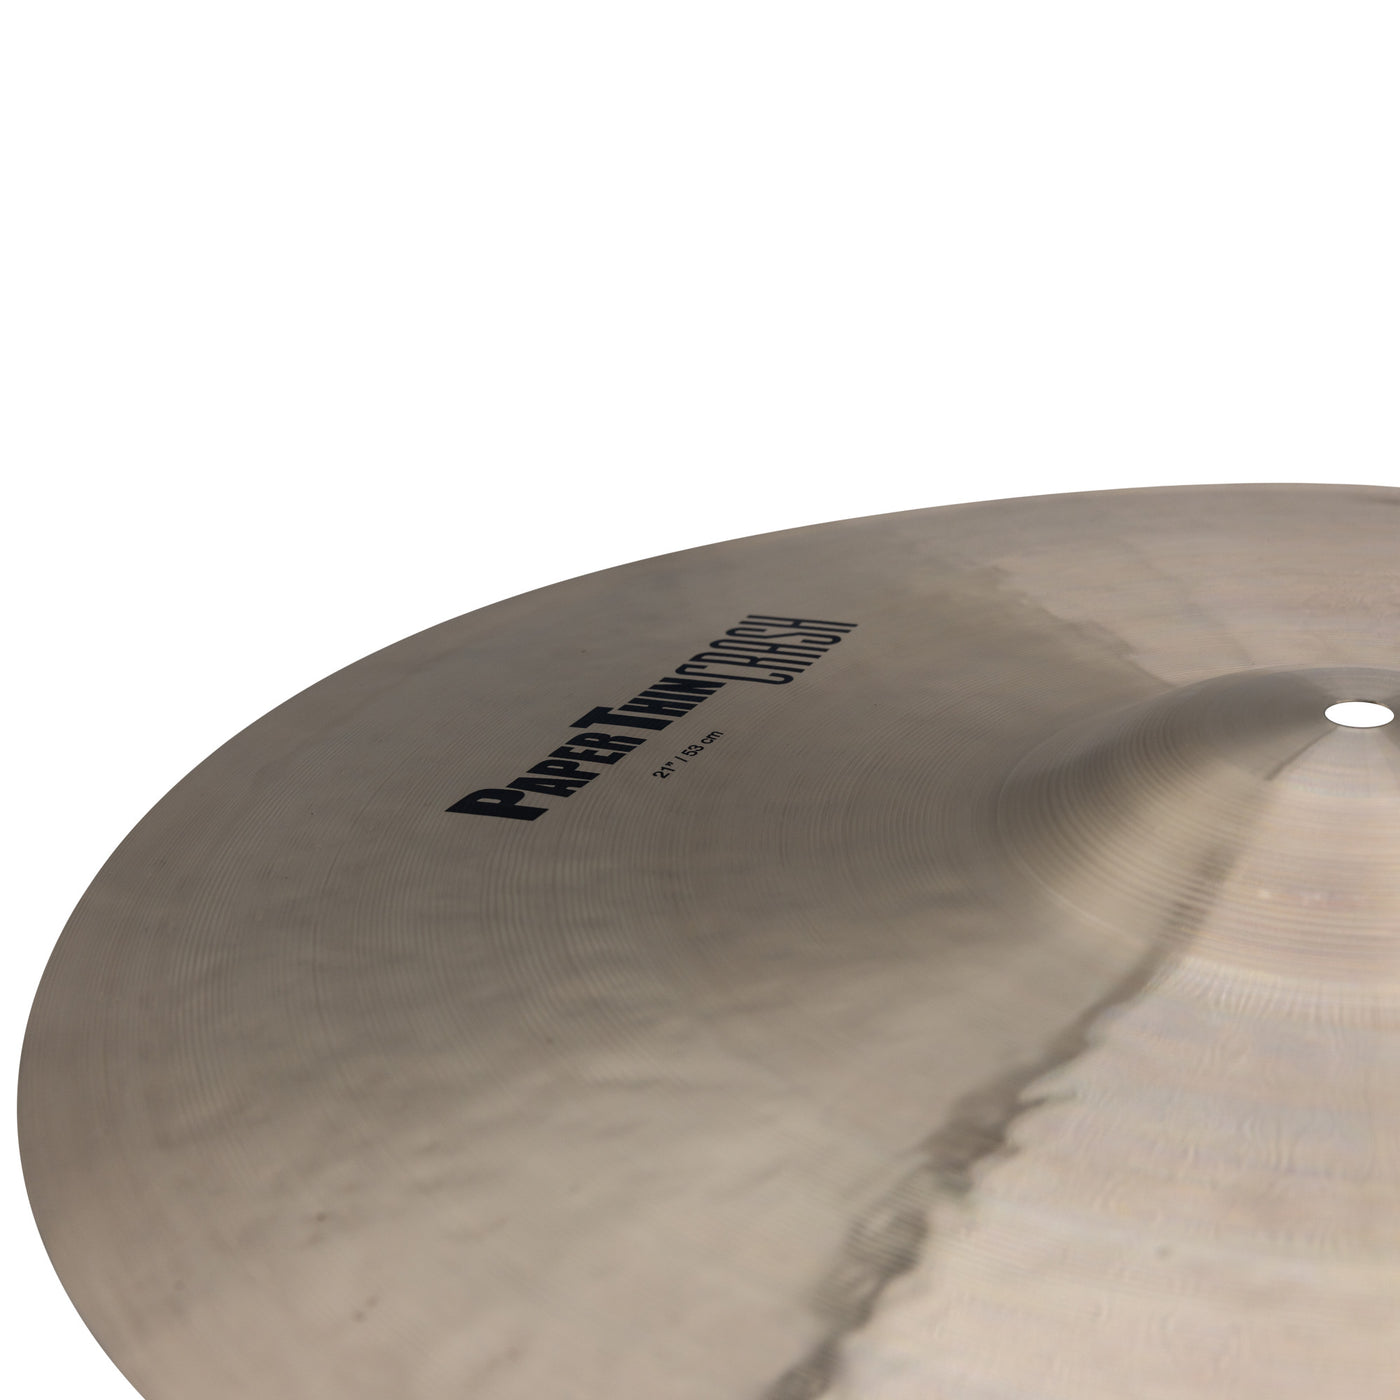 Zildjian K2821 K Paper Thin Crash Cymbal for Drum Set, 21"